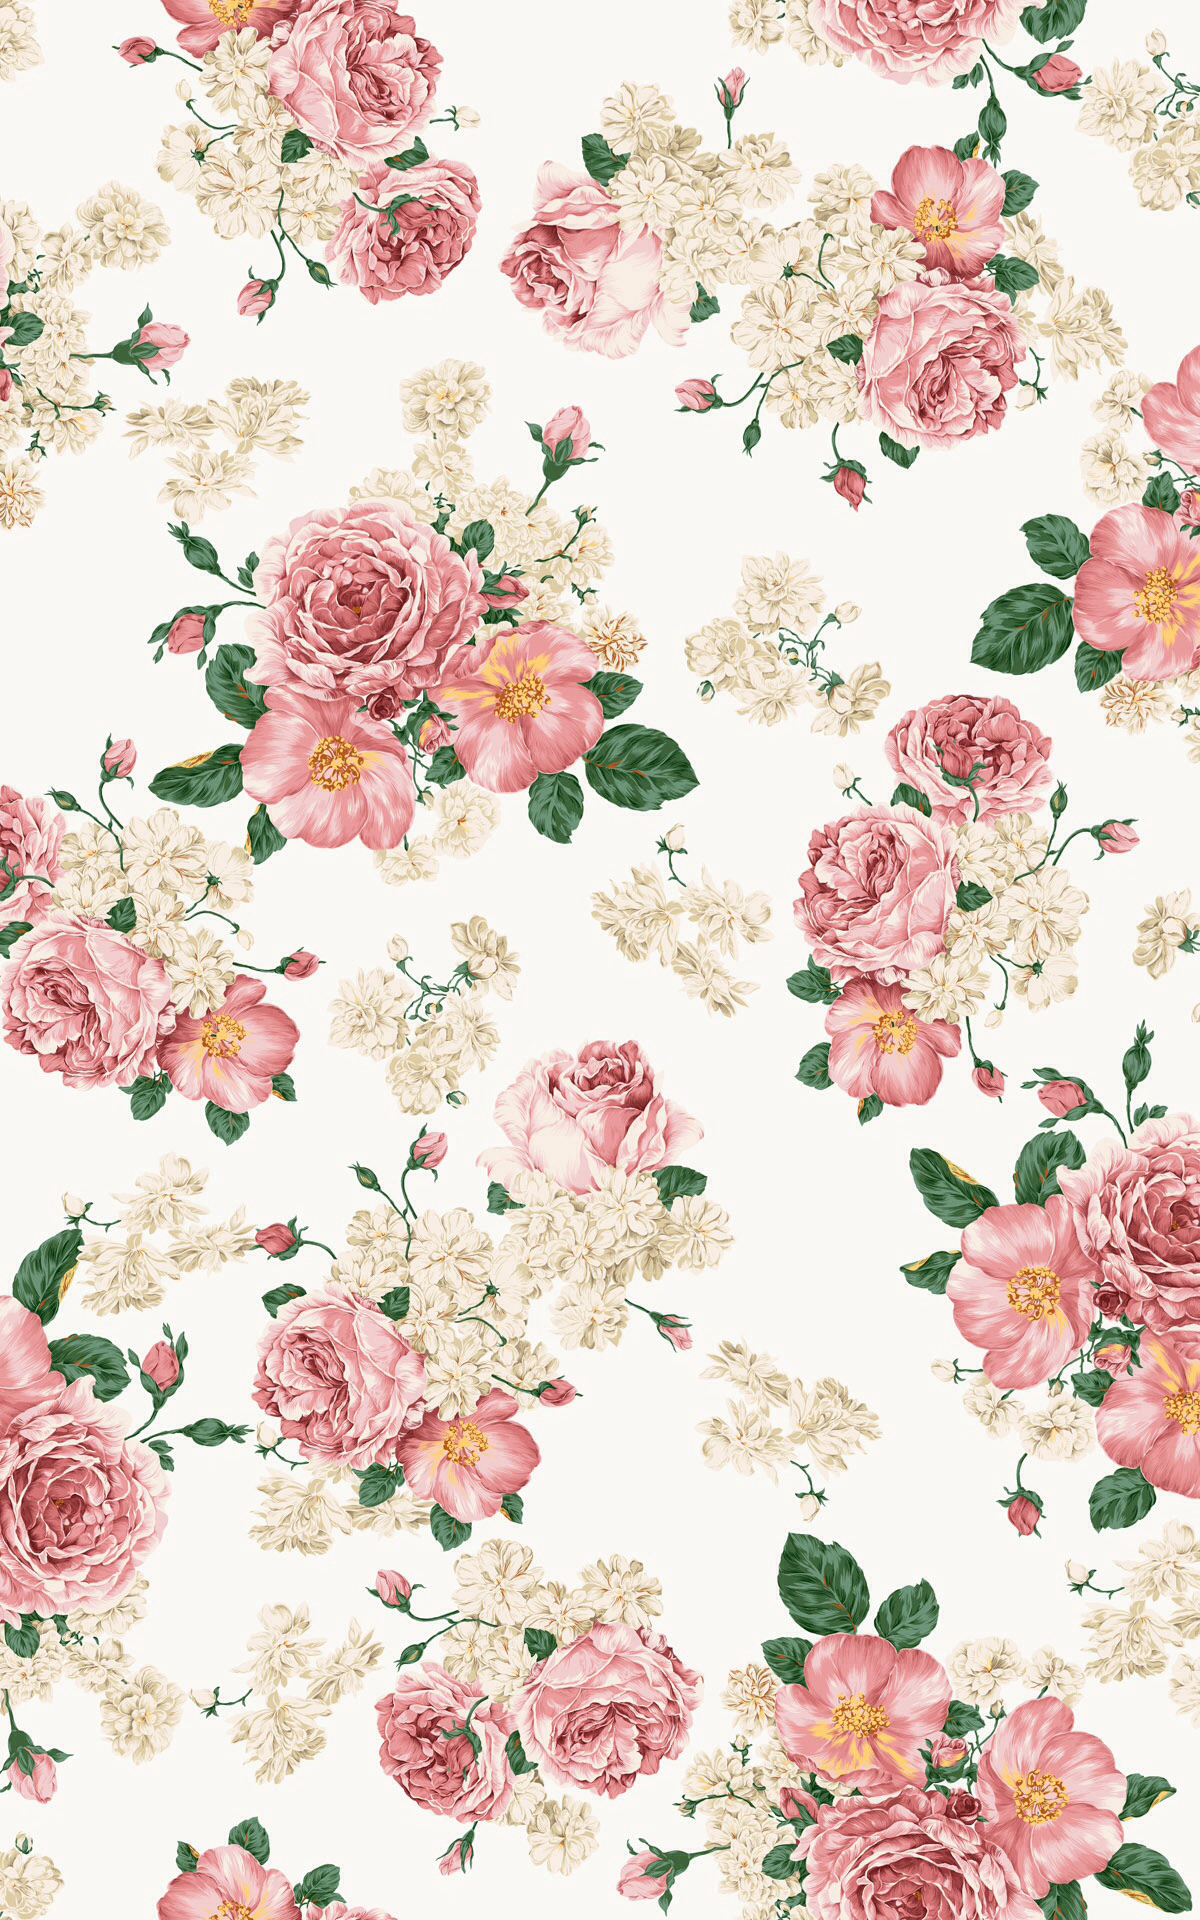 Download Gambar Wallpaper for Iphone with Flowers terbaru 2020